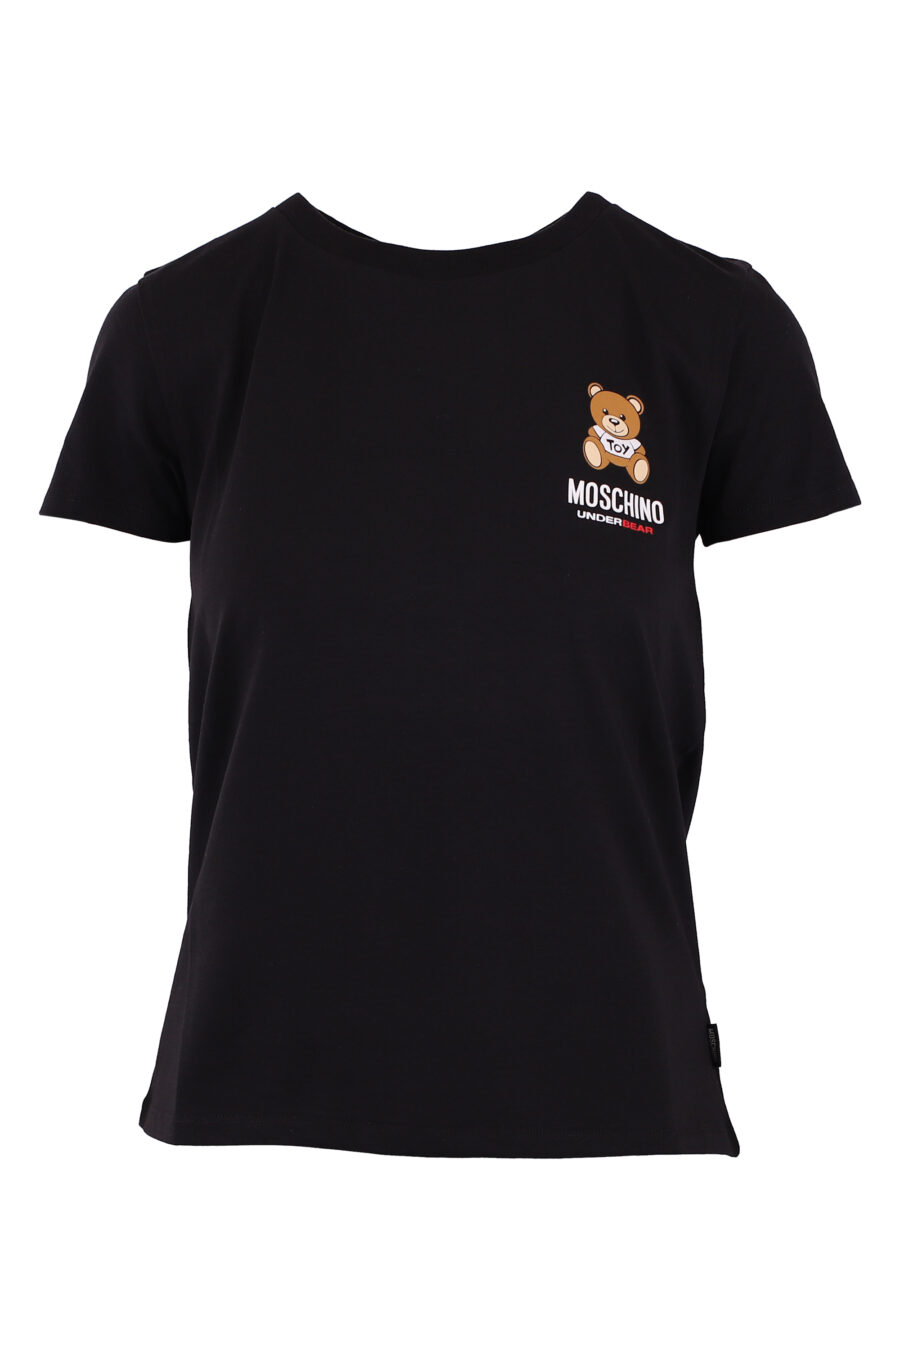 T-shirt schwarz mit kleinem Bärenlogo - IMG 6202